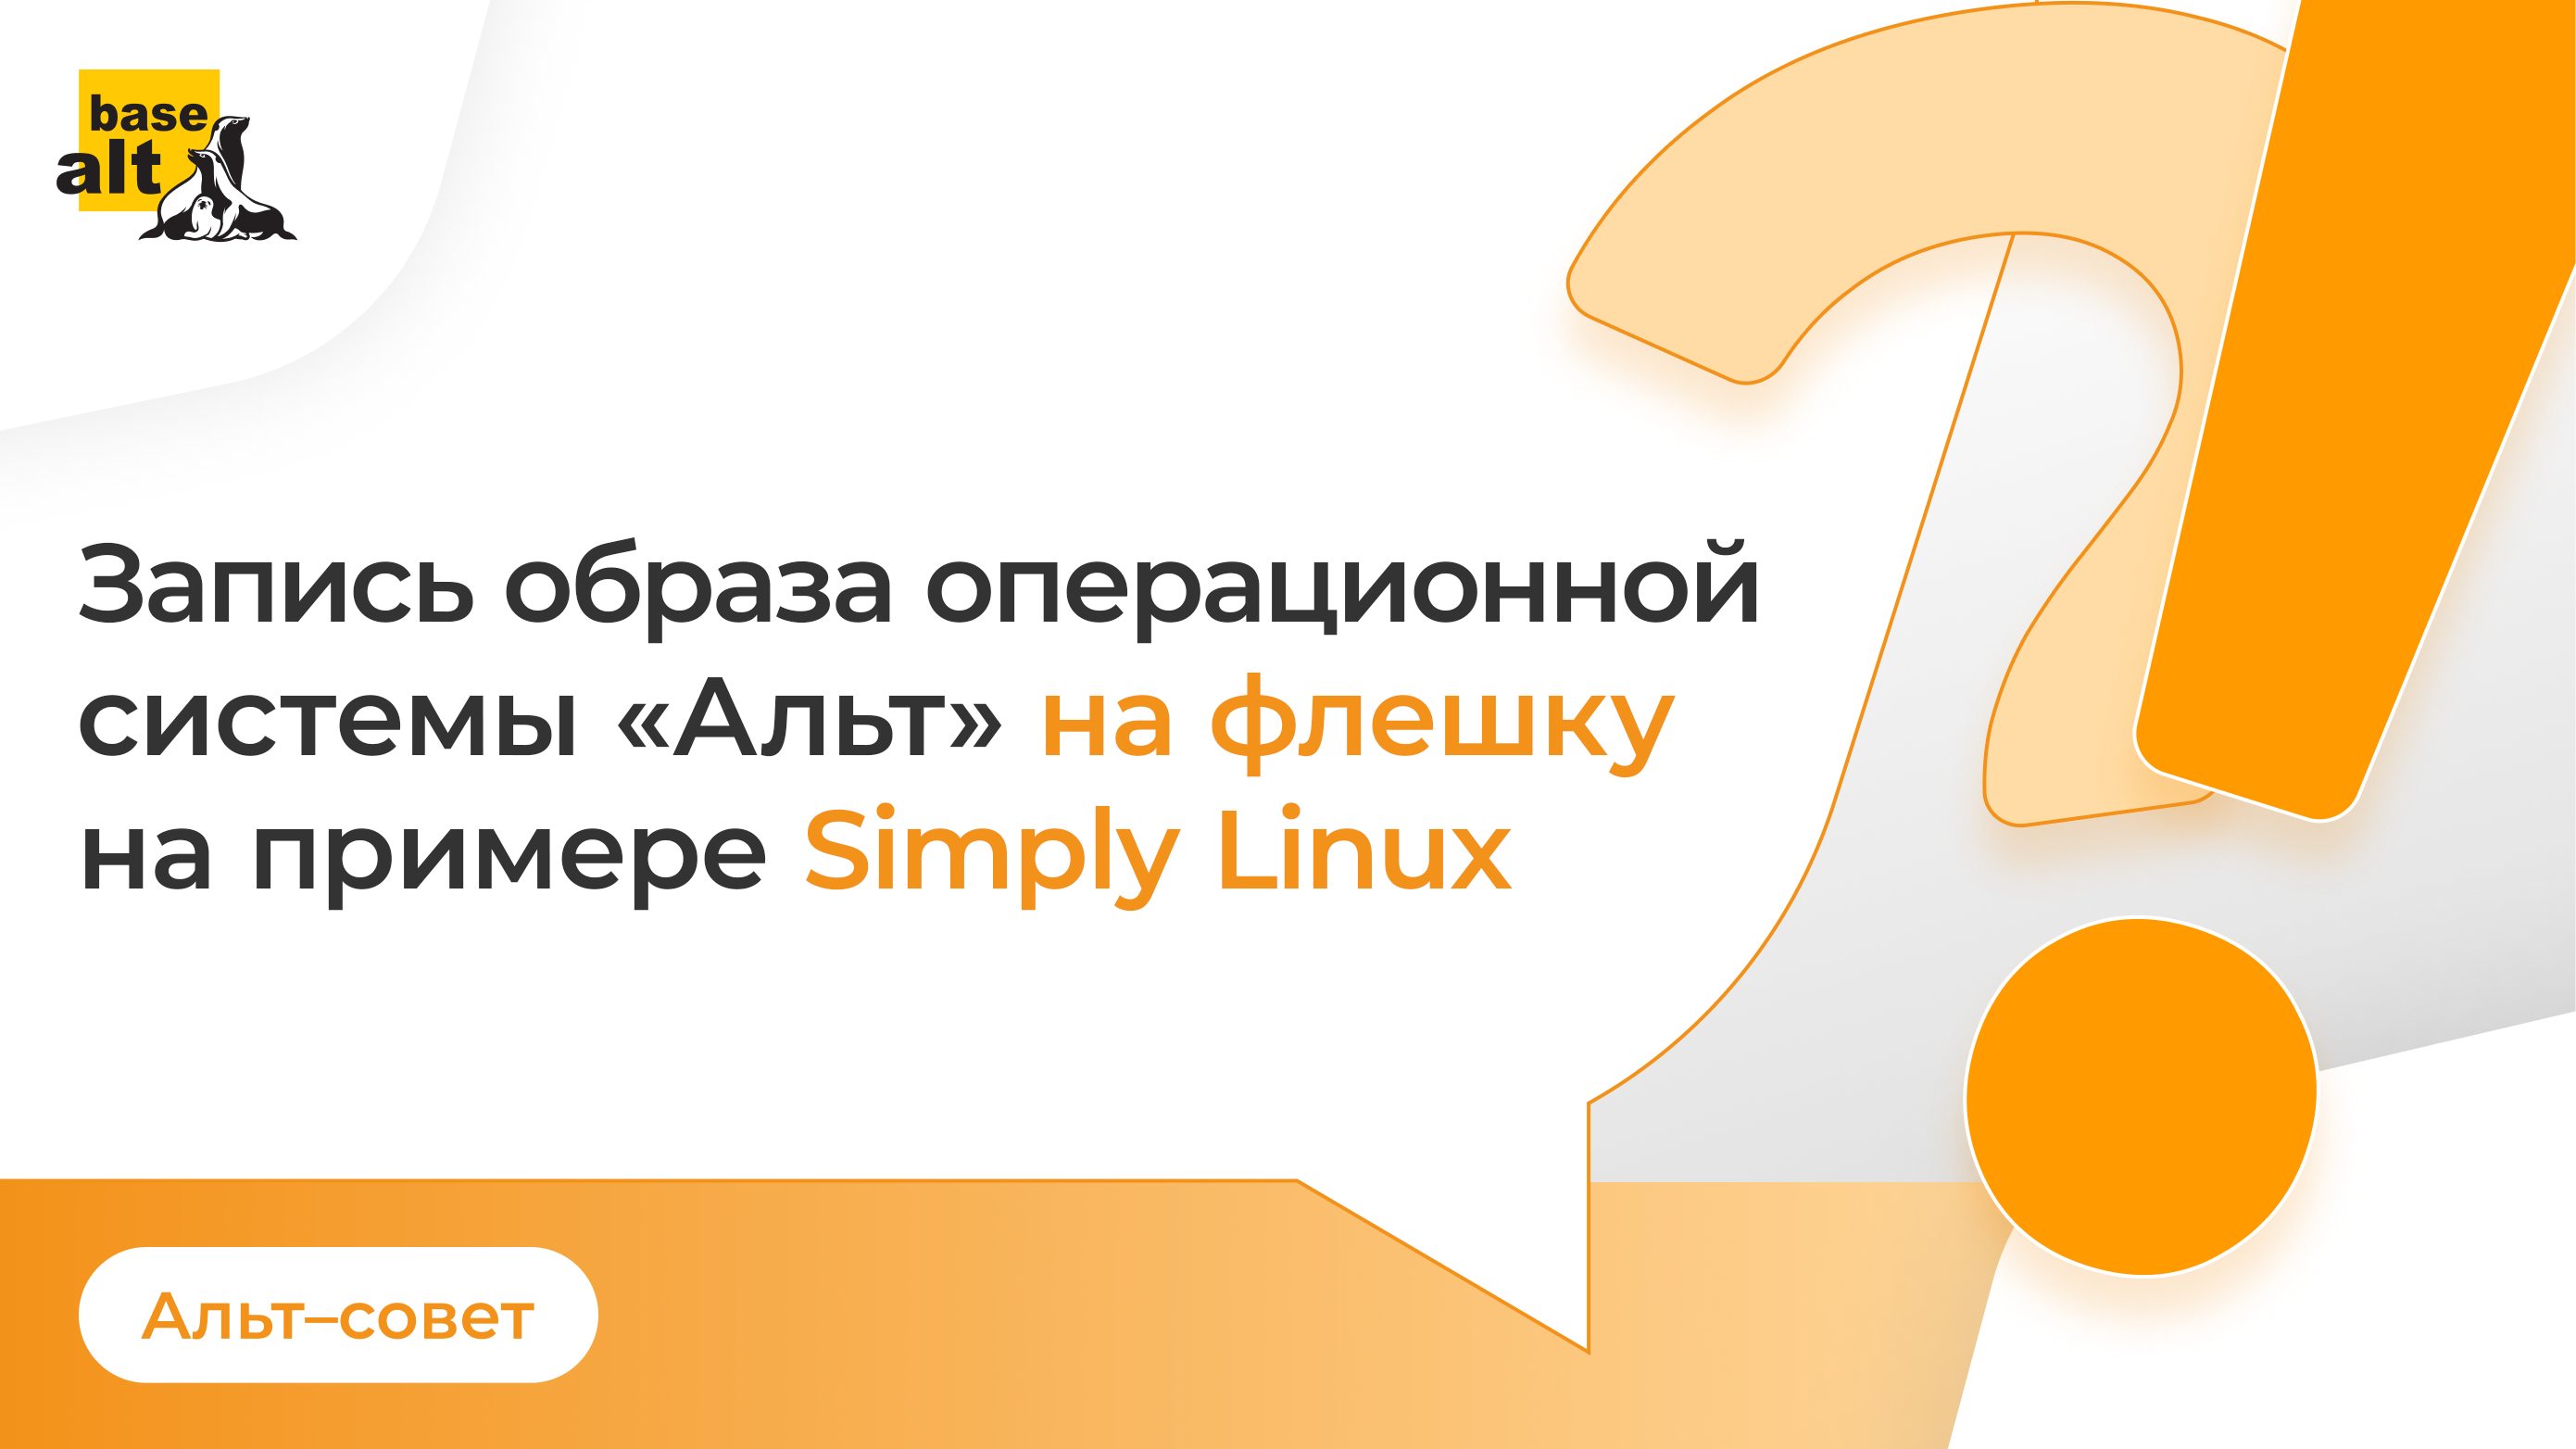 Запись образа операционной системы «Альт» на флэшку на примере Simply Linux